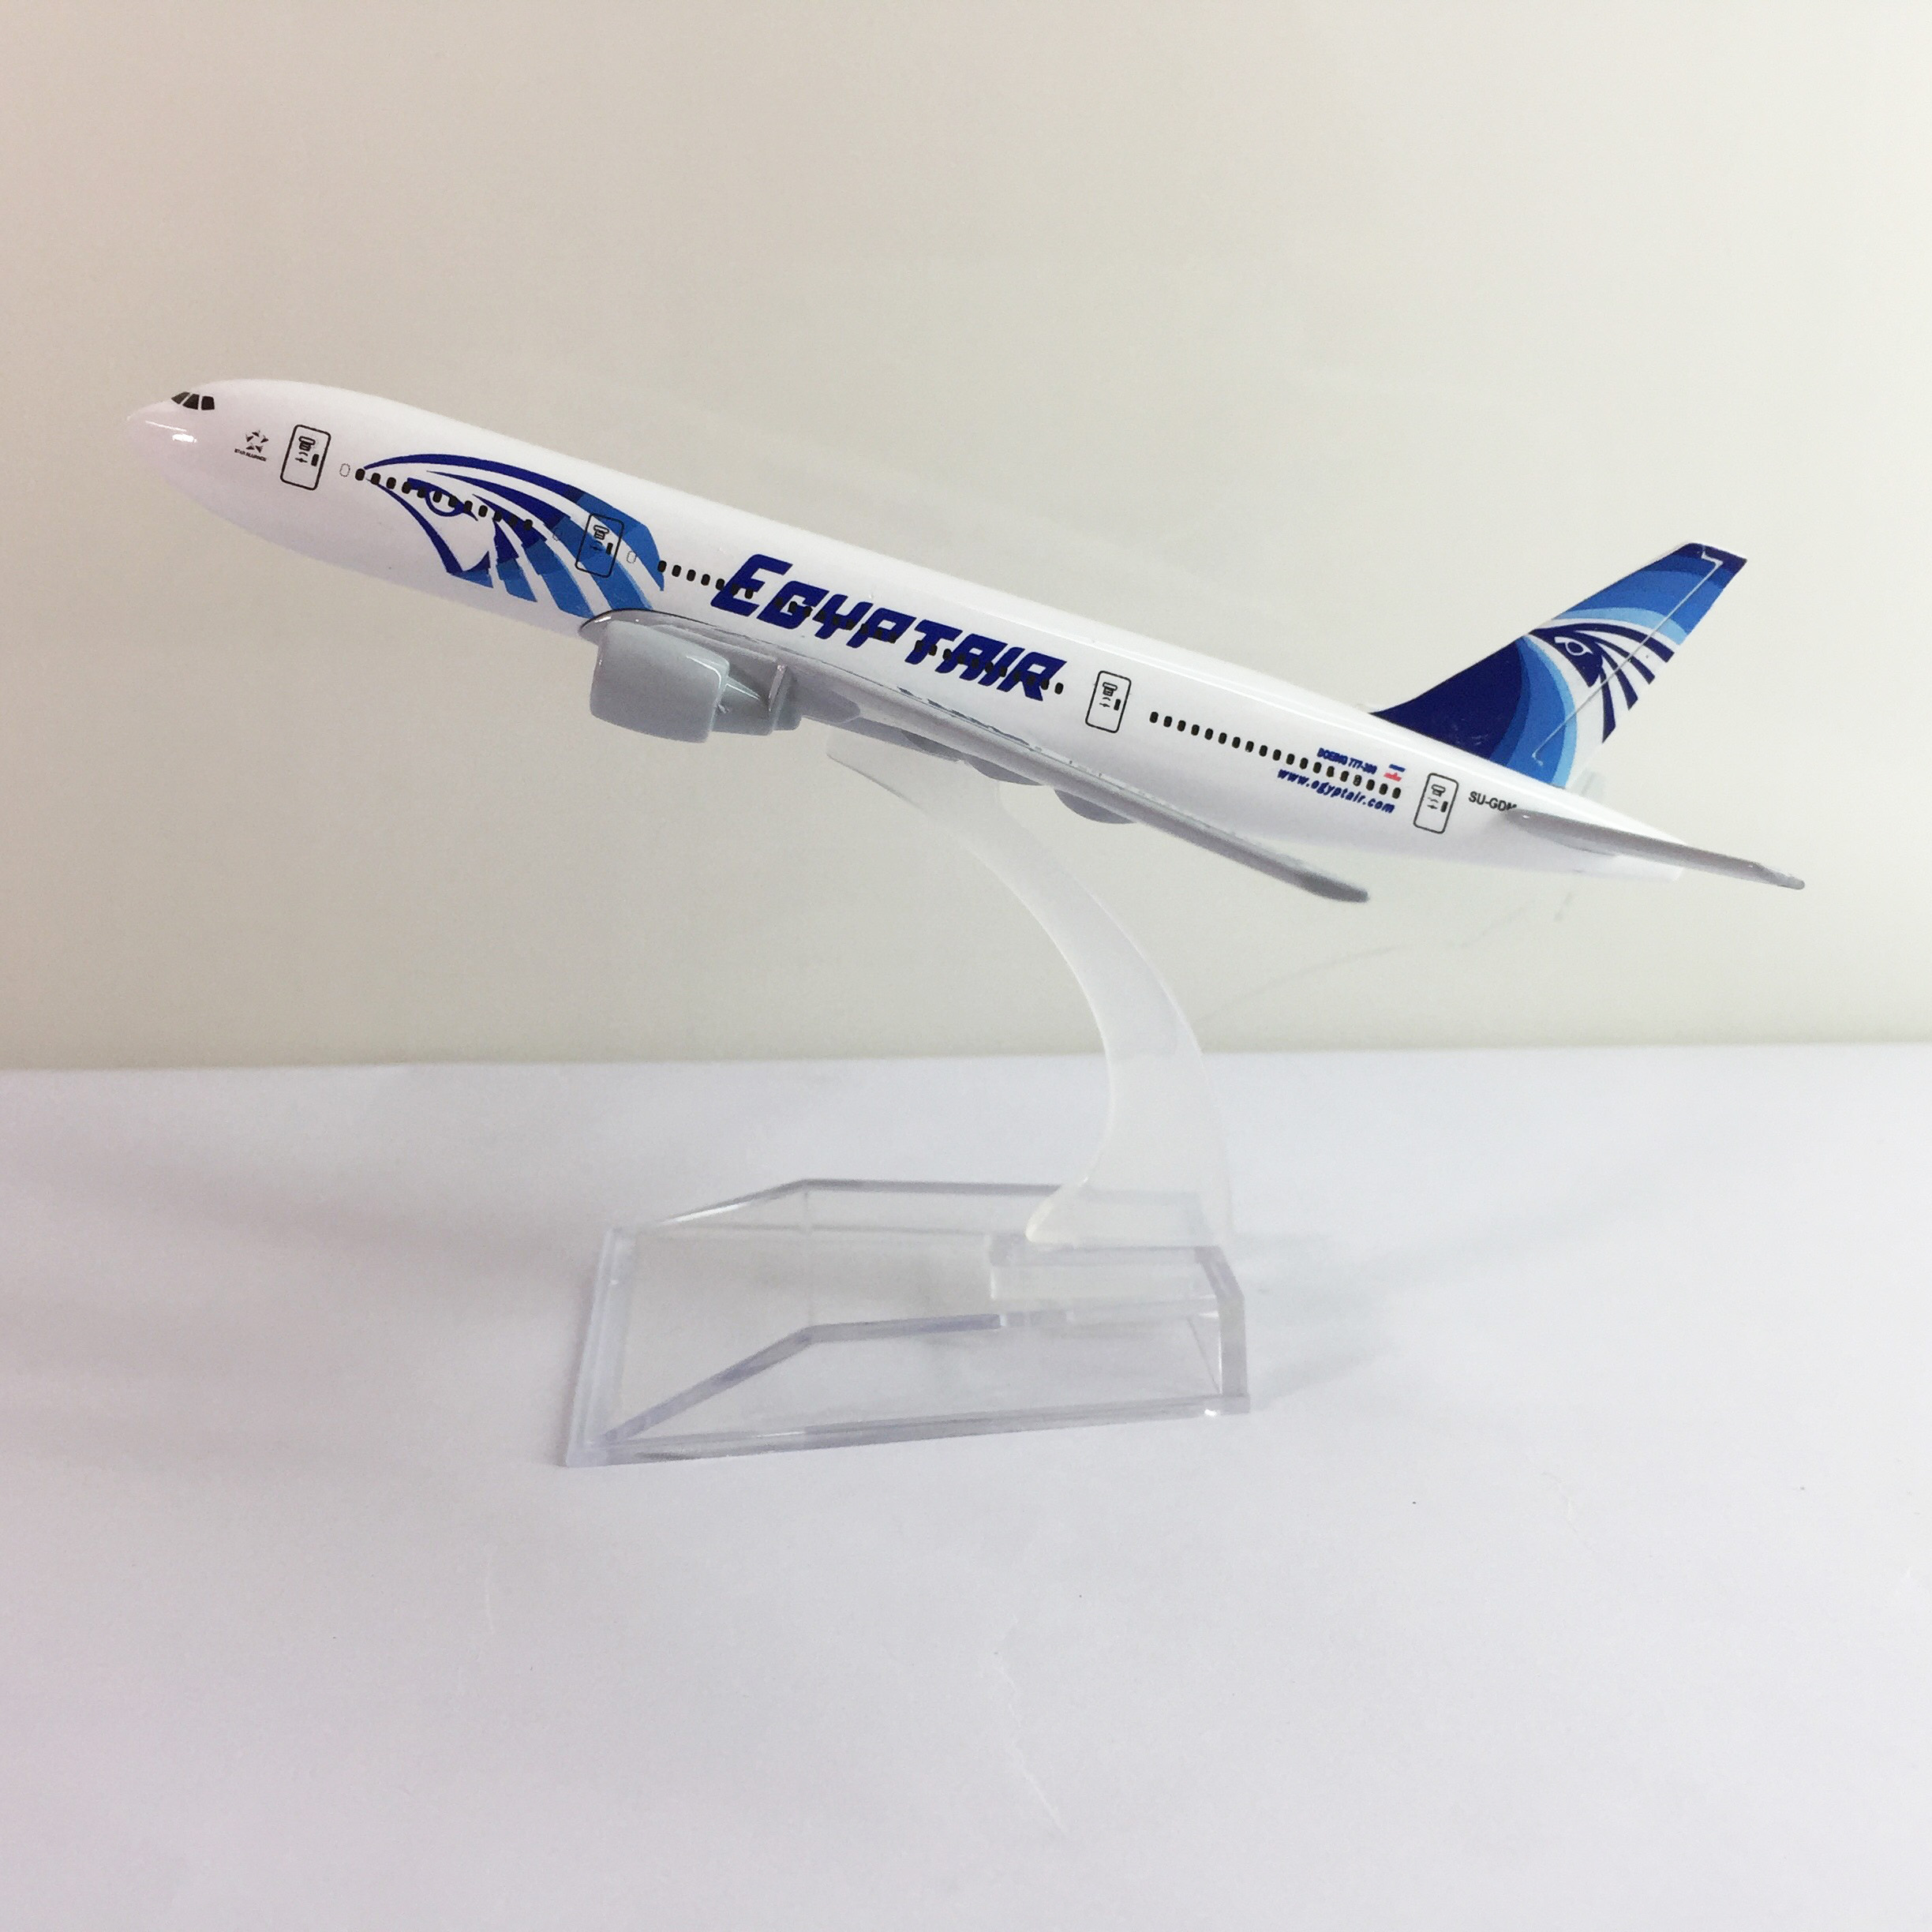 Mô hình máy bay vietnam airlines trưng bày các hãng hàng không nổi tiếng  thế giới